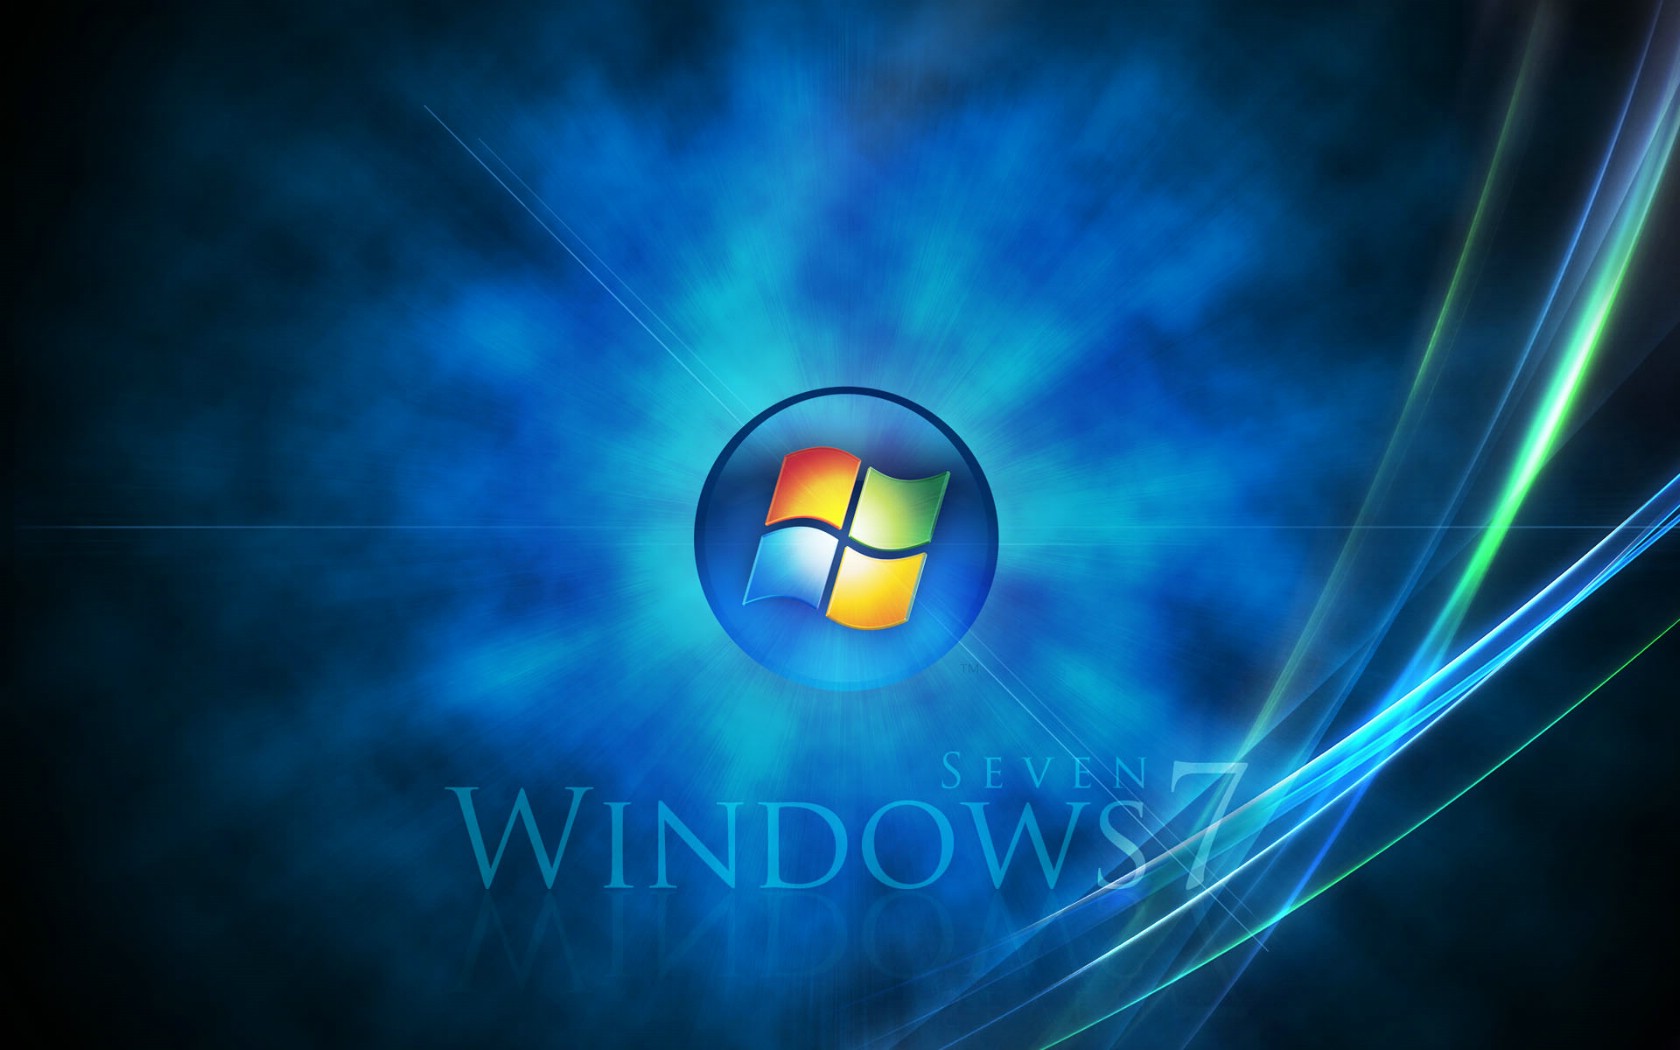 壁纸1680x1050Windows7 4 13壁纸 Windows7壁纸 Windows7图片 Windows7素材 系统壁纸 系统图库 系统图片素材桌面壁纸